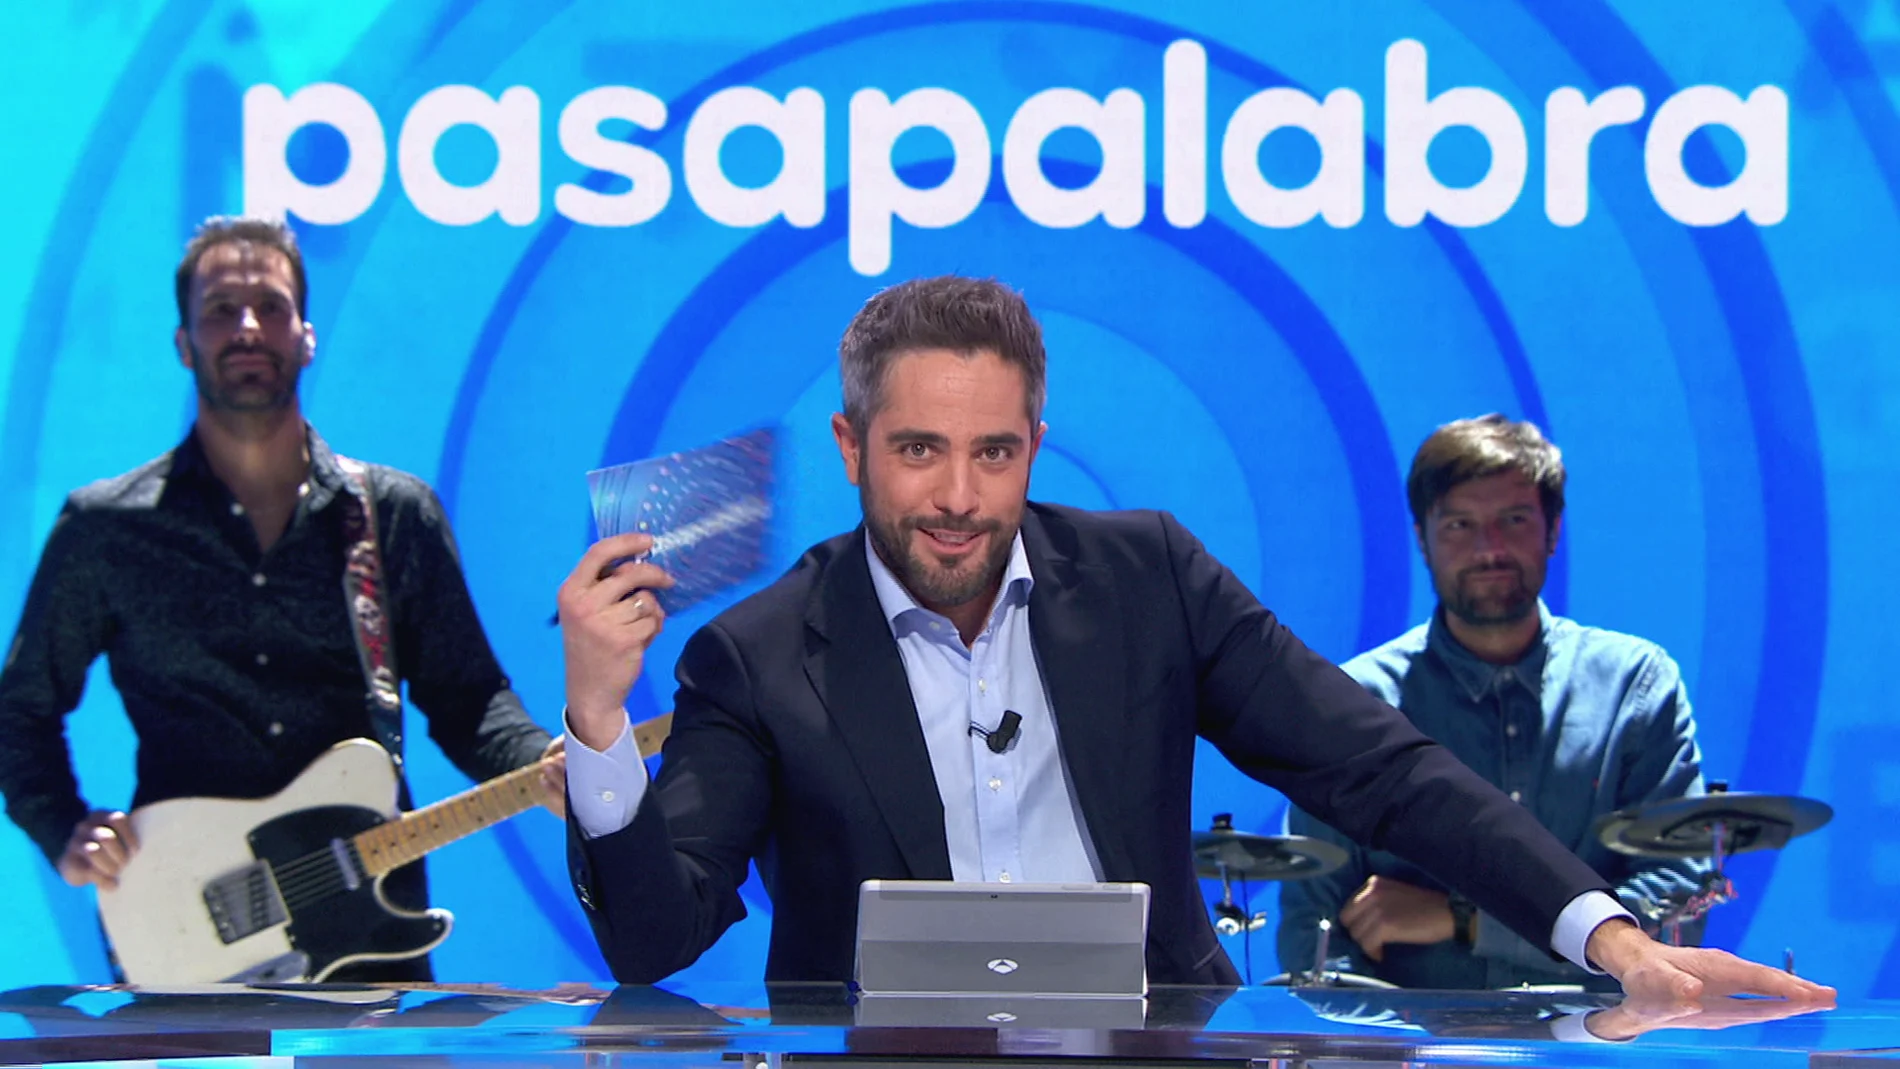 Especial 20 años de 'Pasapalabra', el domingo a las 19.30 horas en Antena 3